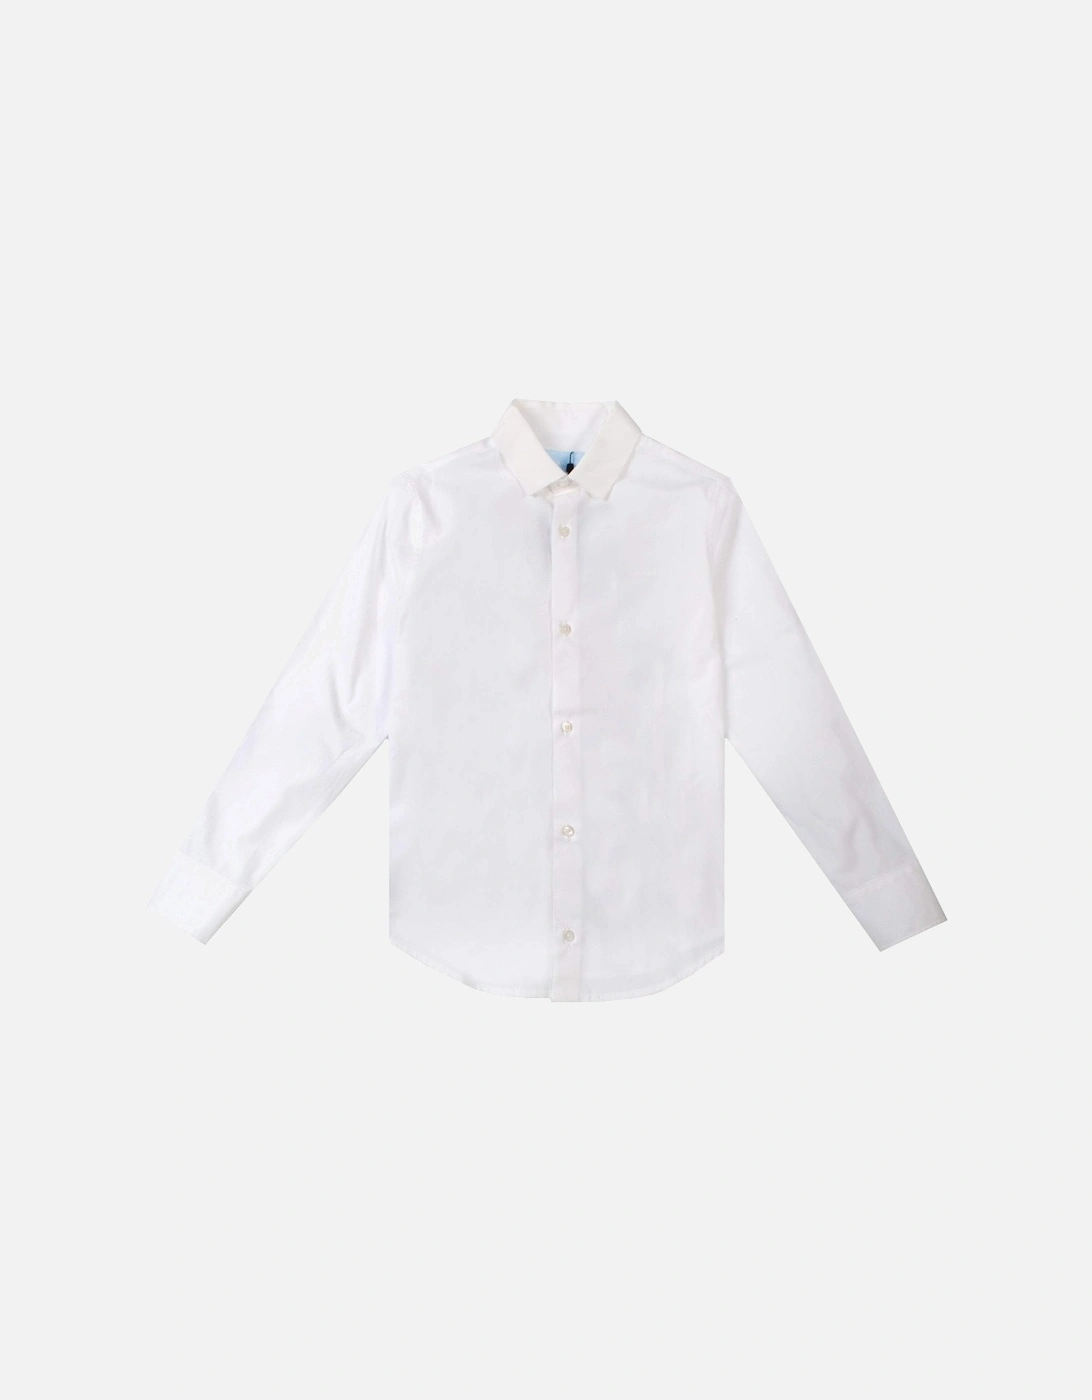 Boys Printed Shirt White, 2 of 1